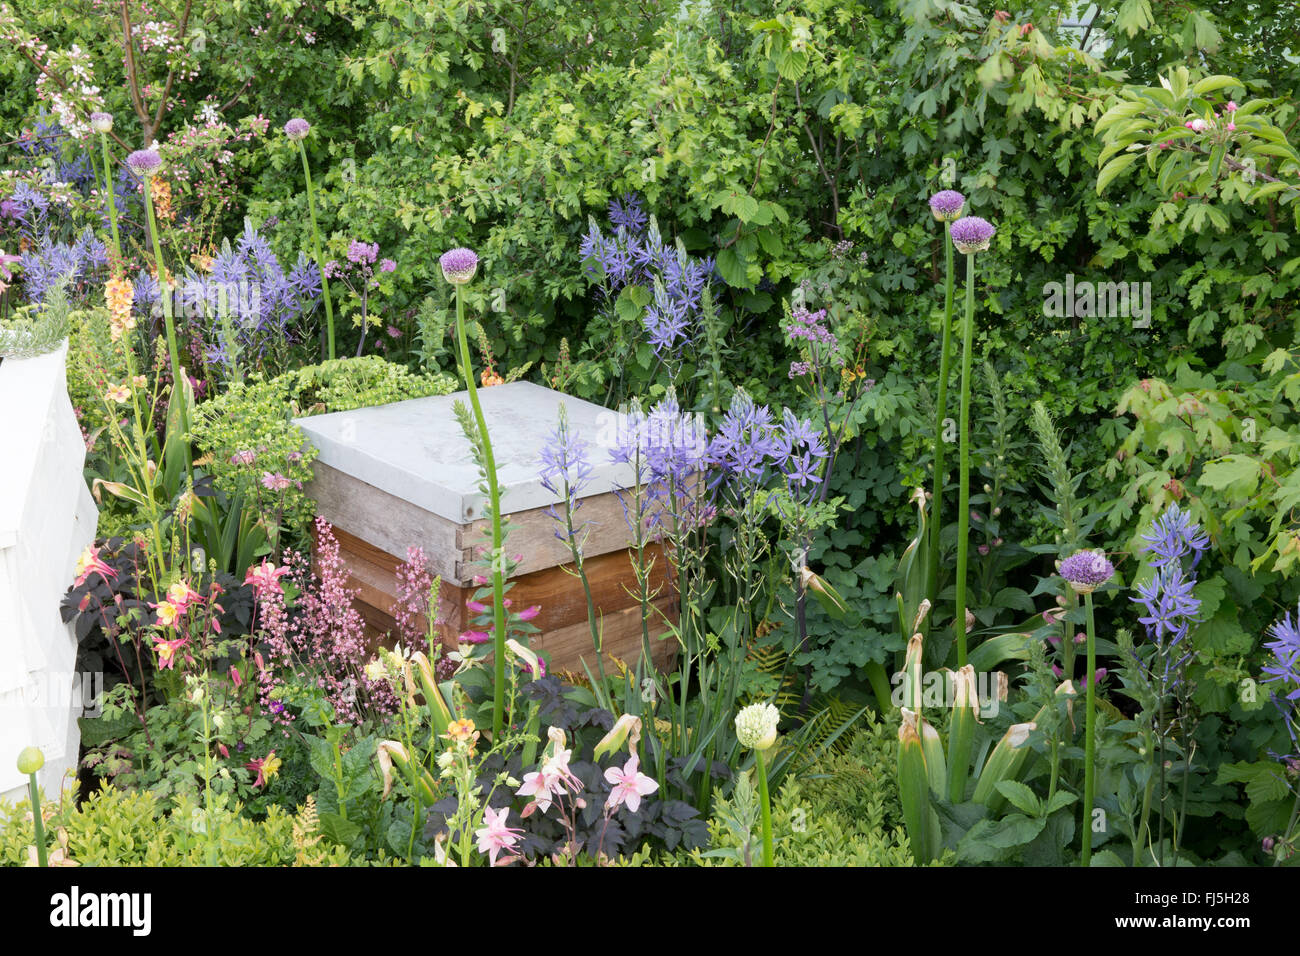 Petit jardin urbain convivial avec ruche dans une fleur Lit pour les abeilles plantation d'Alliums - Camassia leichtlinii Angleterre GB ROYAUME-UNI Banque D'Images